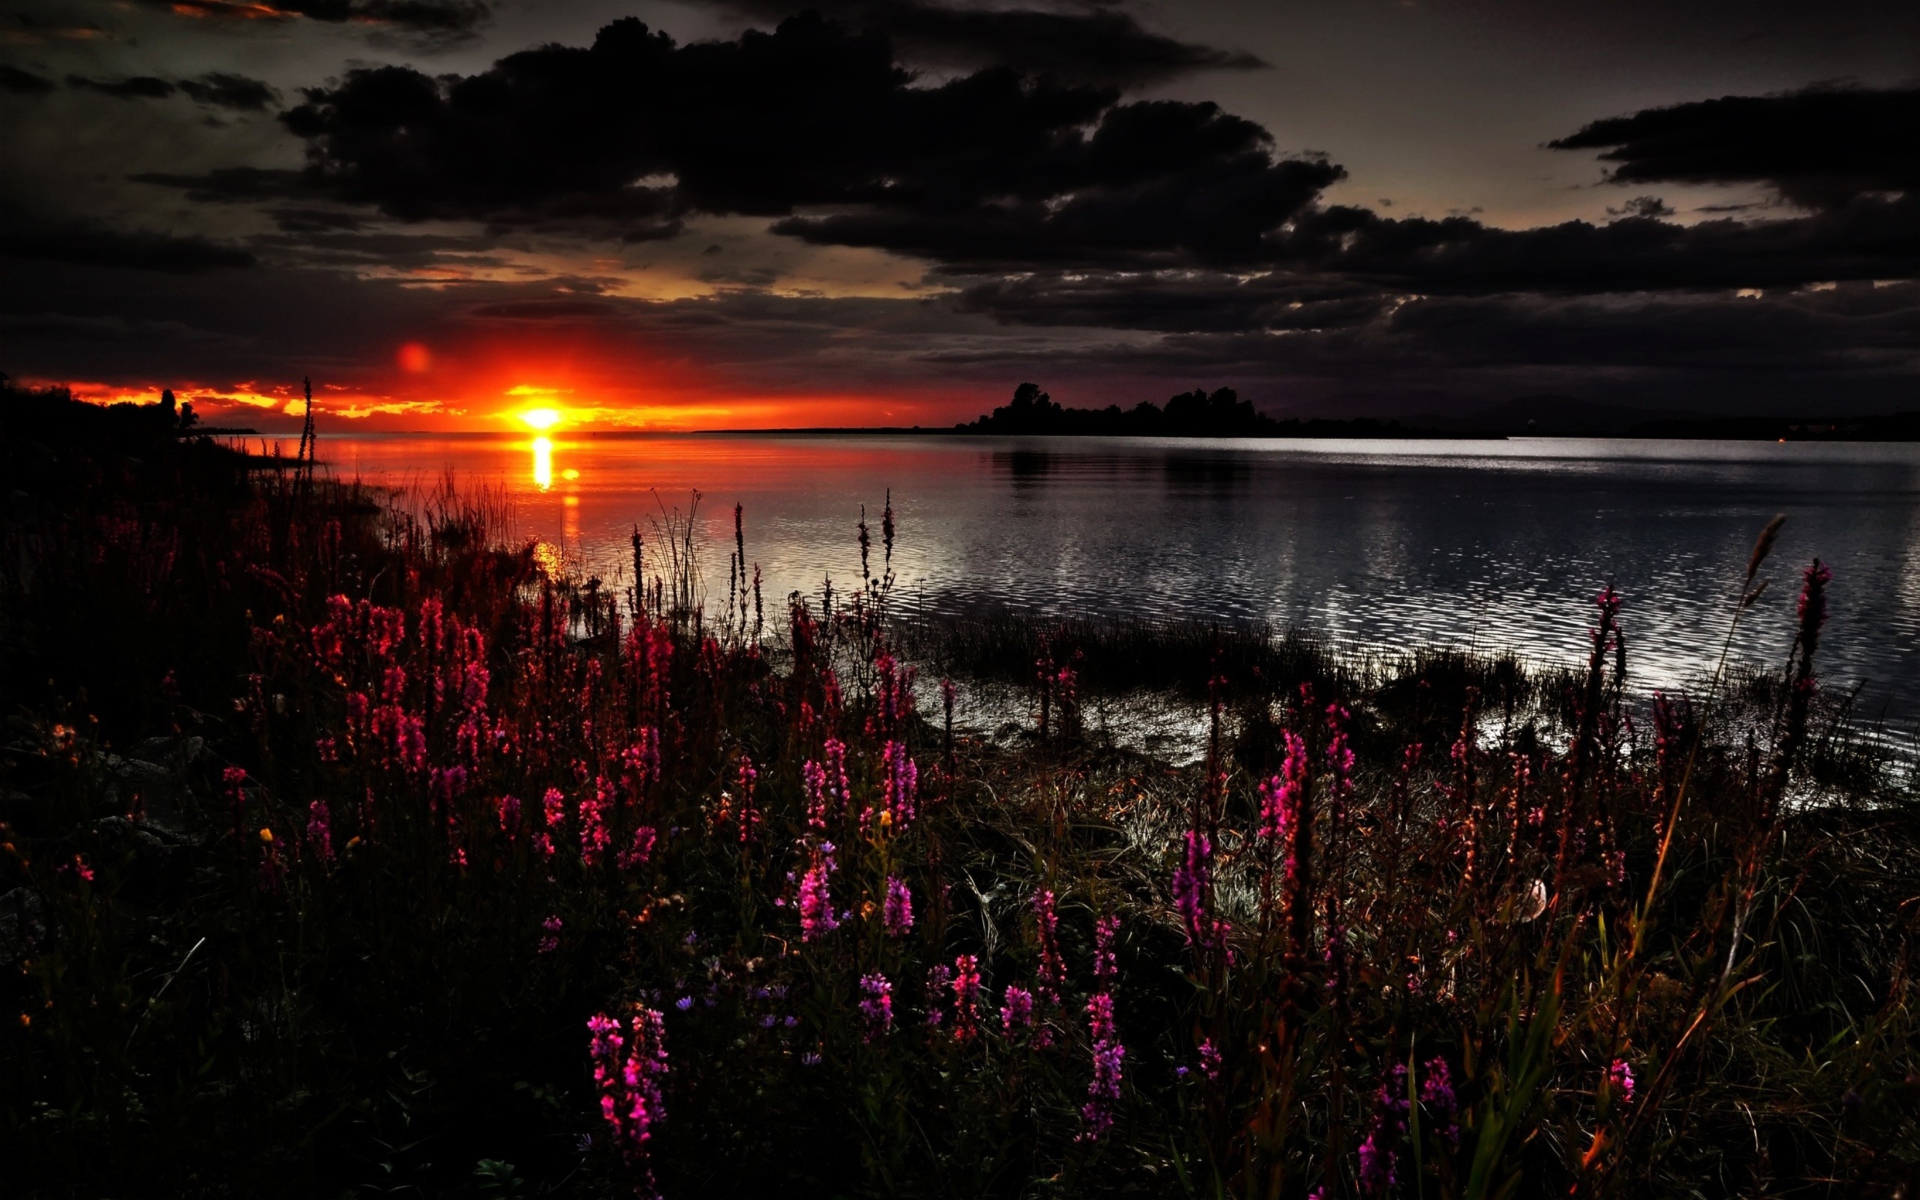 Sfondi Flowers And Lake At Sunset 1920x1200